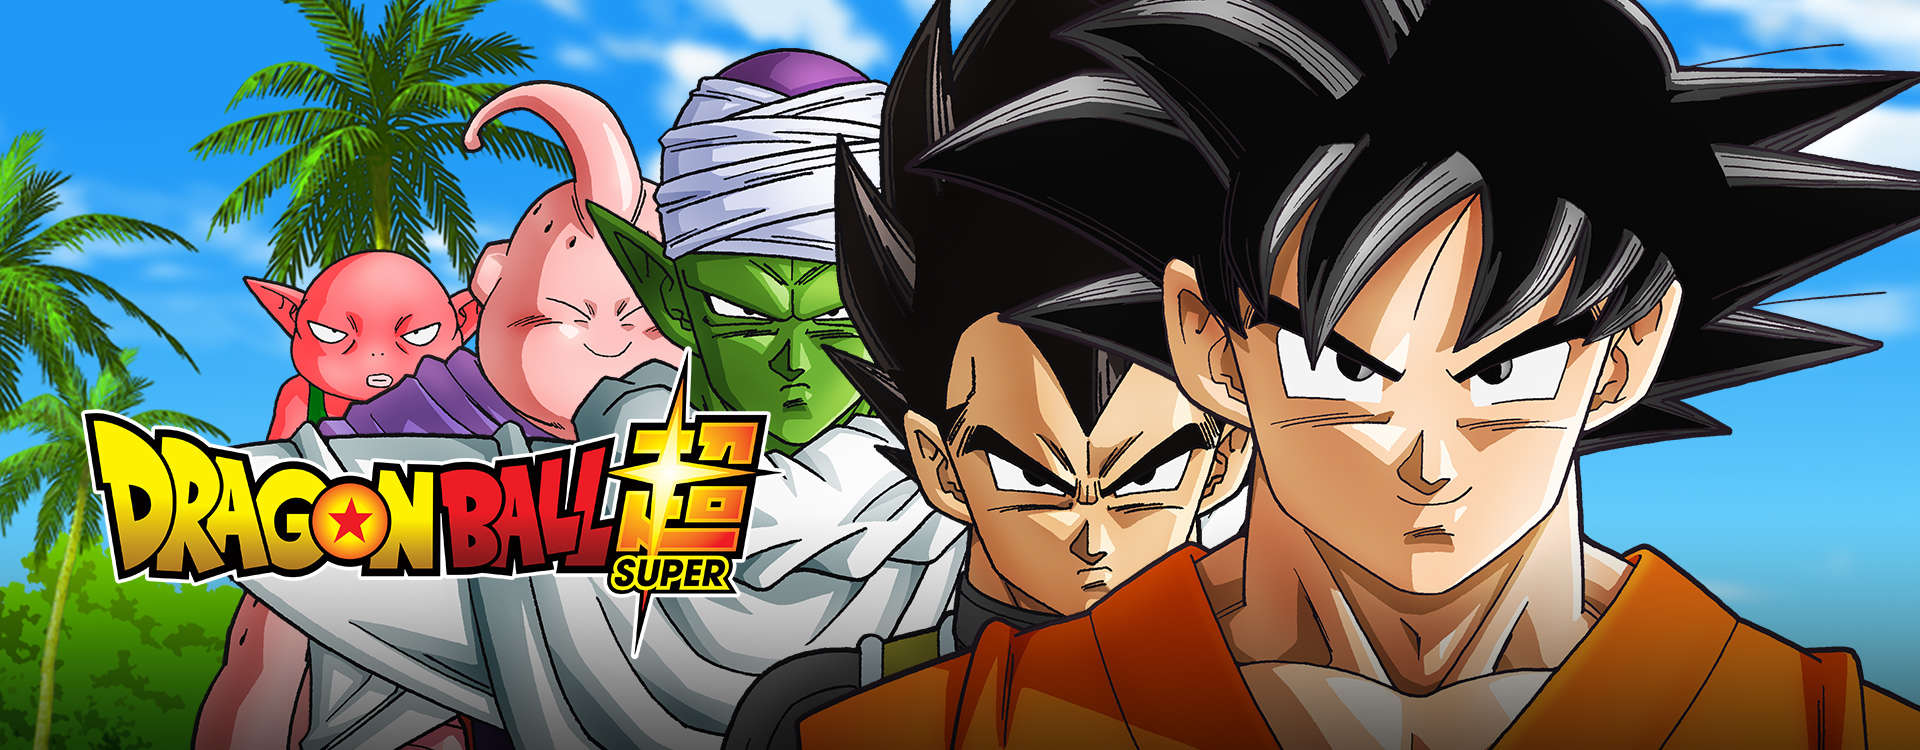 Dragon Ball Super estreia no Cartoon Network; veja a abertura dublada